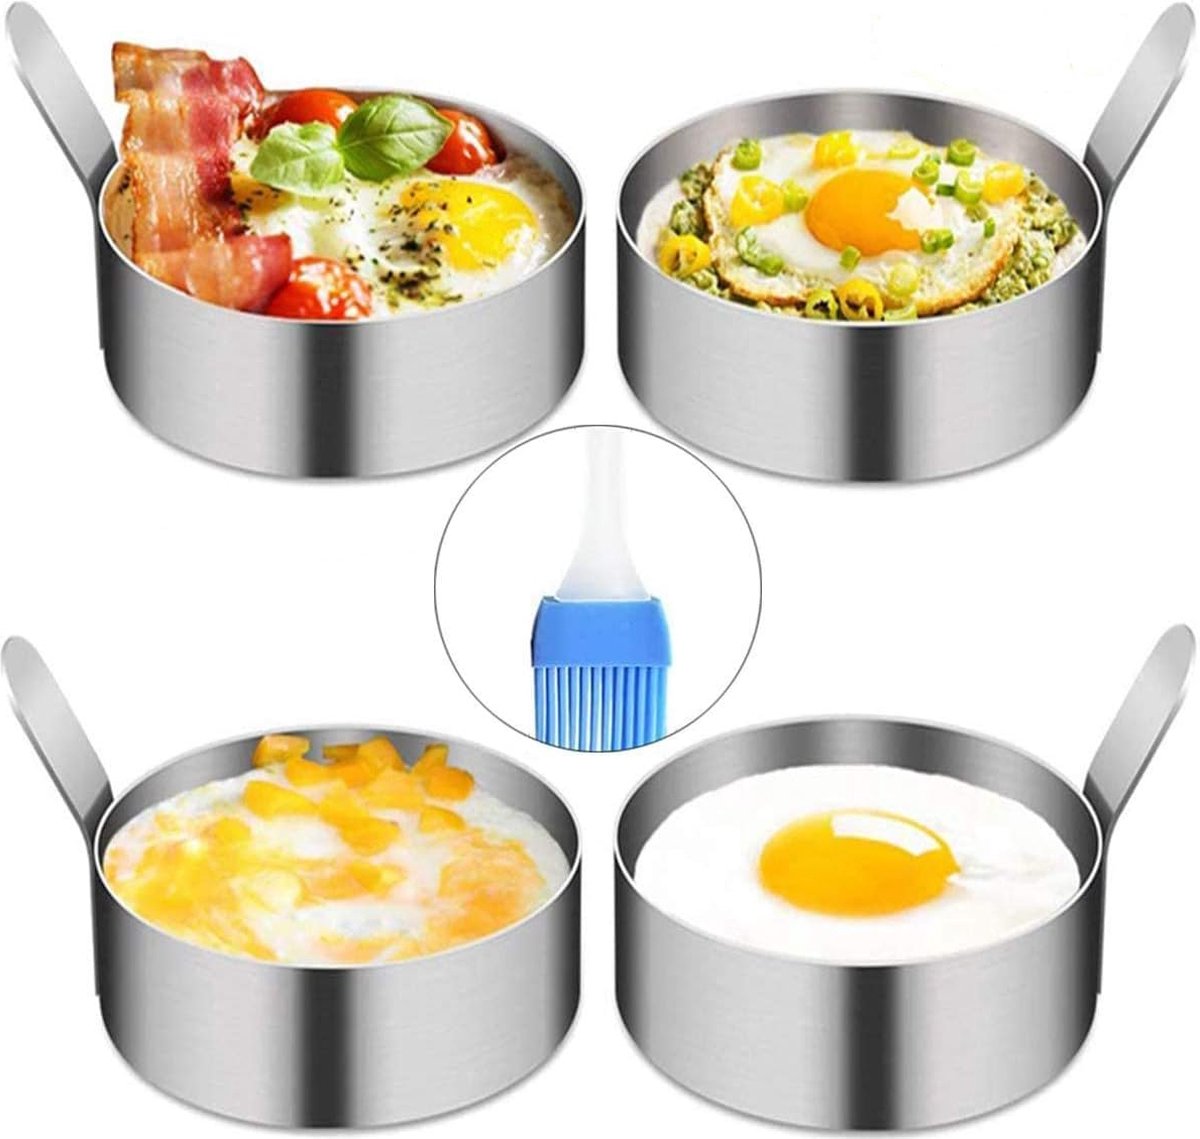 Pancakevorm Egg Ring, 4 stuks 9 cm spiegeleivorm ei ringen voor het koken van spiegelei/pannenkoeken/omeletten en meer, antiaanbaklaag, roestvrij staal van levensmiddelenkwaliteit